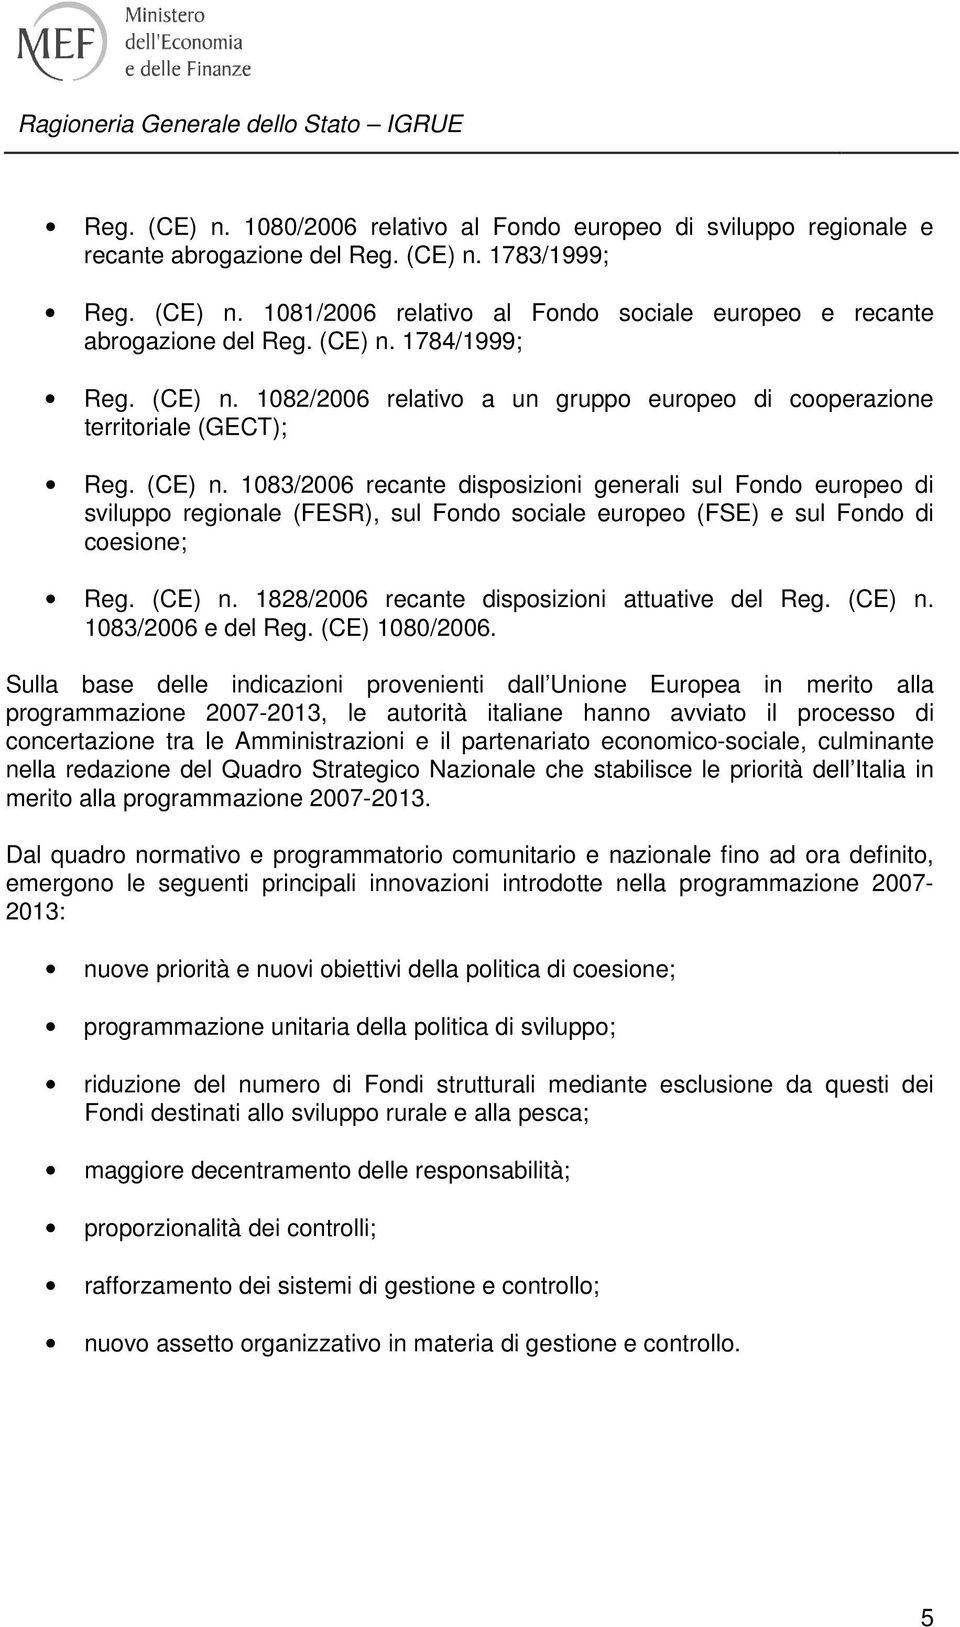 (CE) n. 1828/2006 recante disposizioni attuative del Reg. (CE) n. 1083/2006 e del Reg. (CE) 1080/2006.